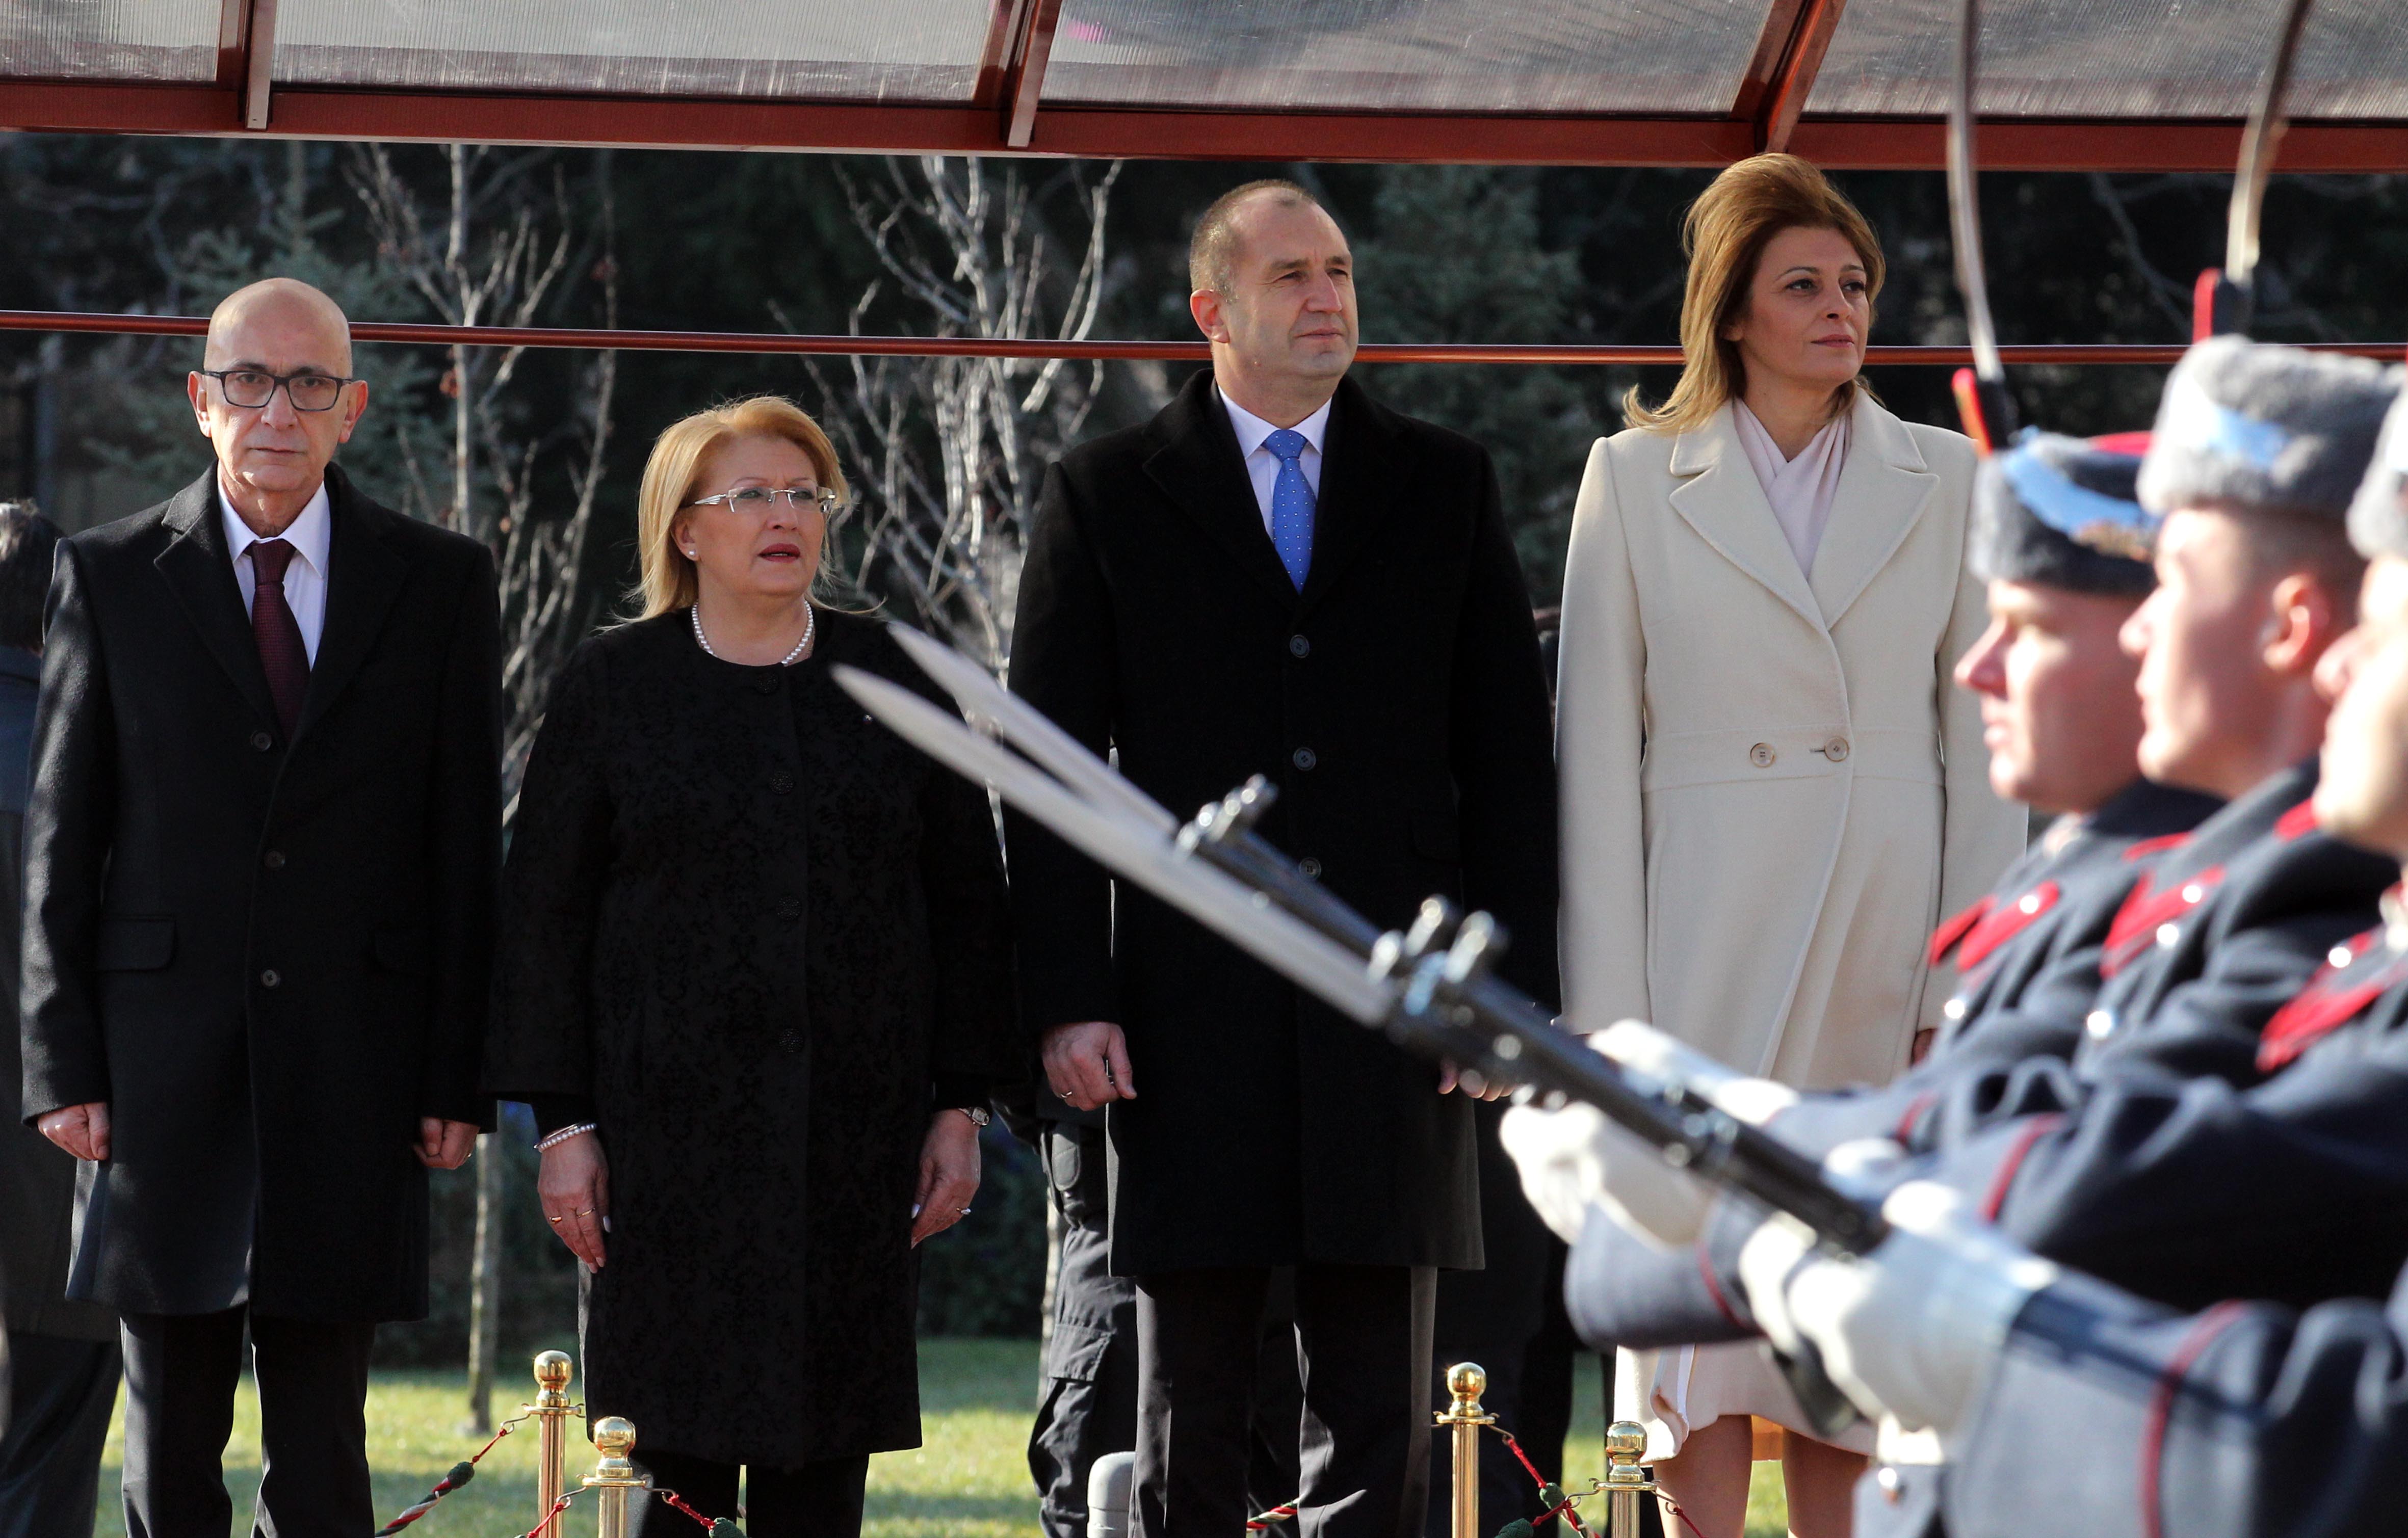 Румен Радев и Десислава Радева посрещнаха президента на Малта и съпруга ѝ